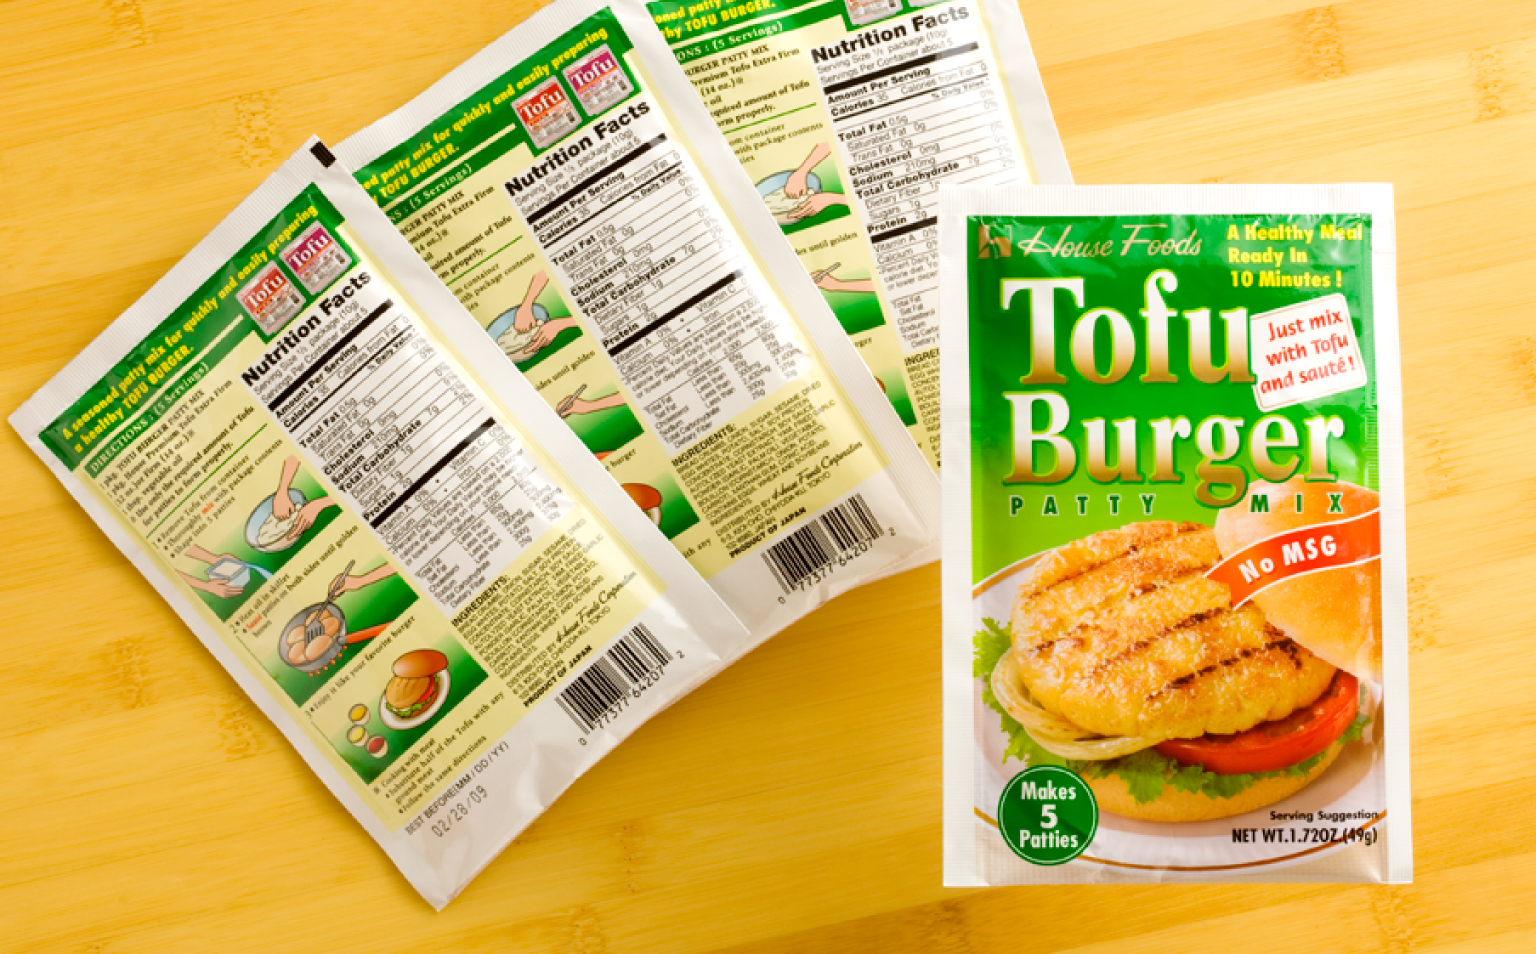 Tofu burger